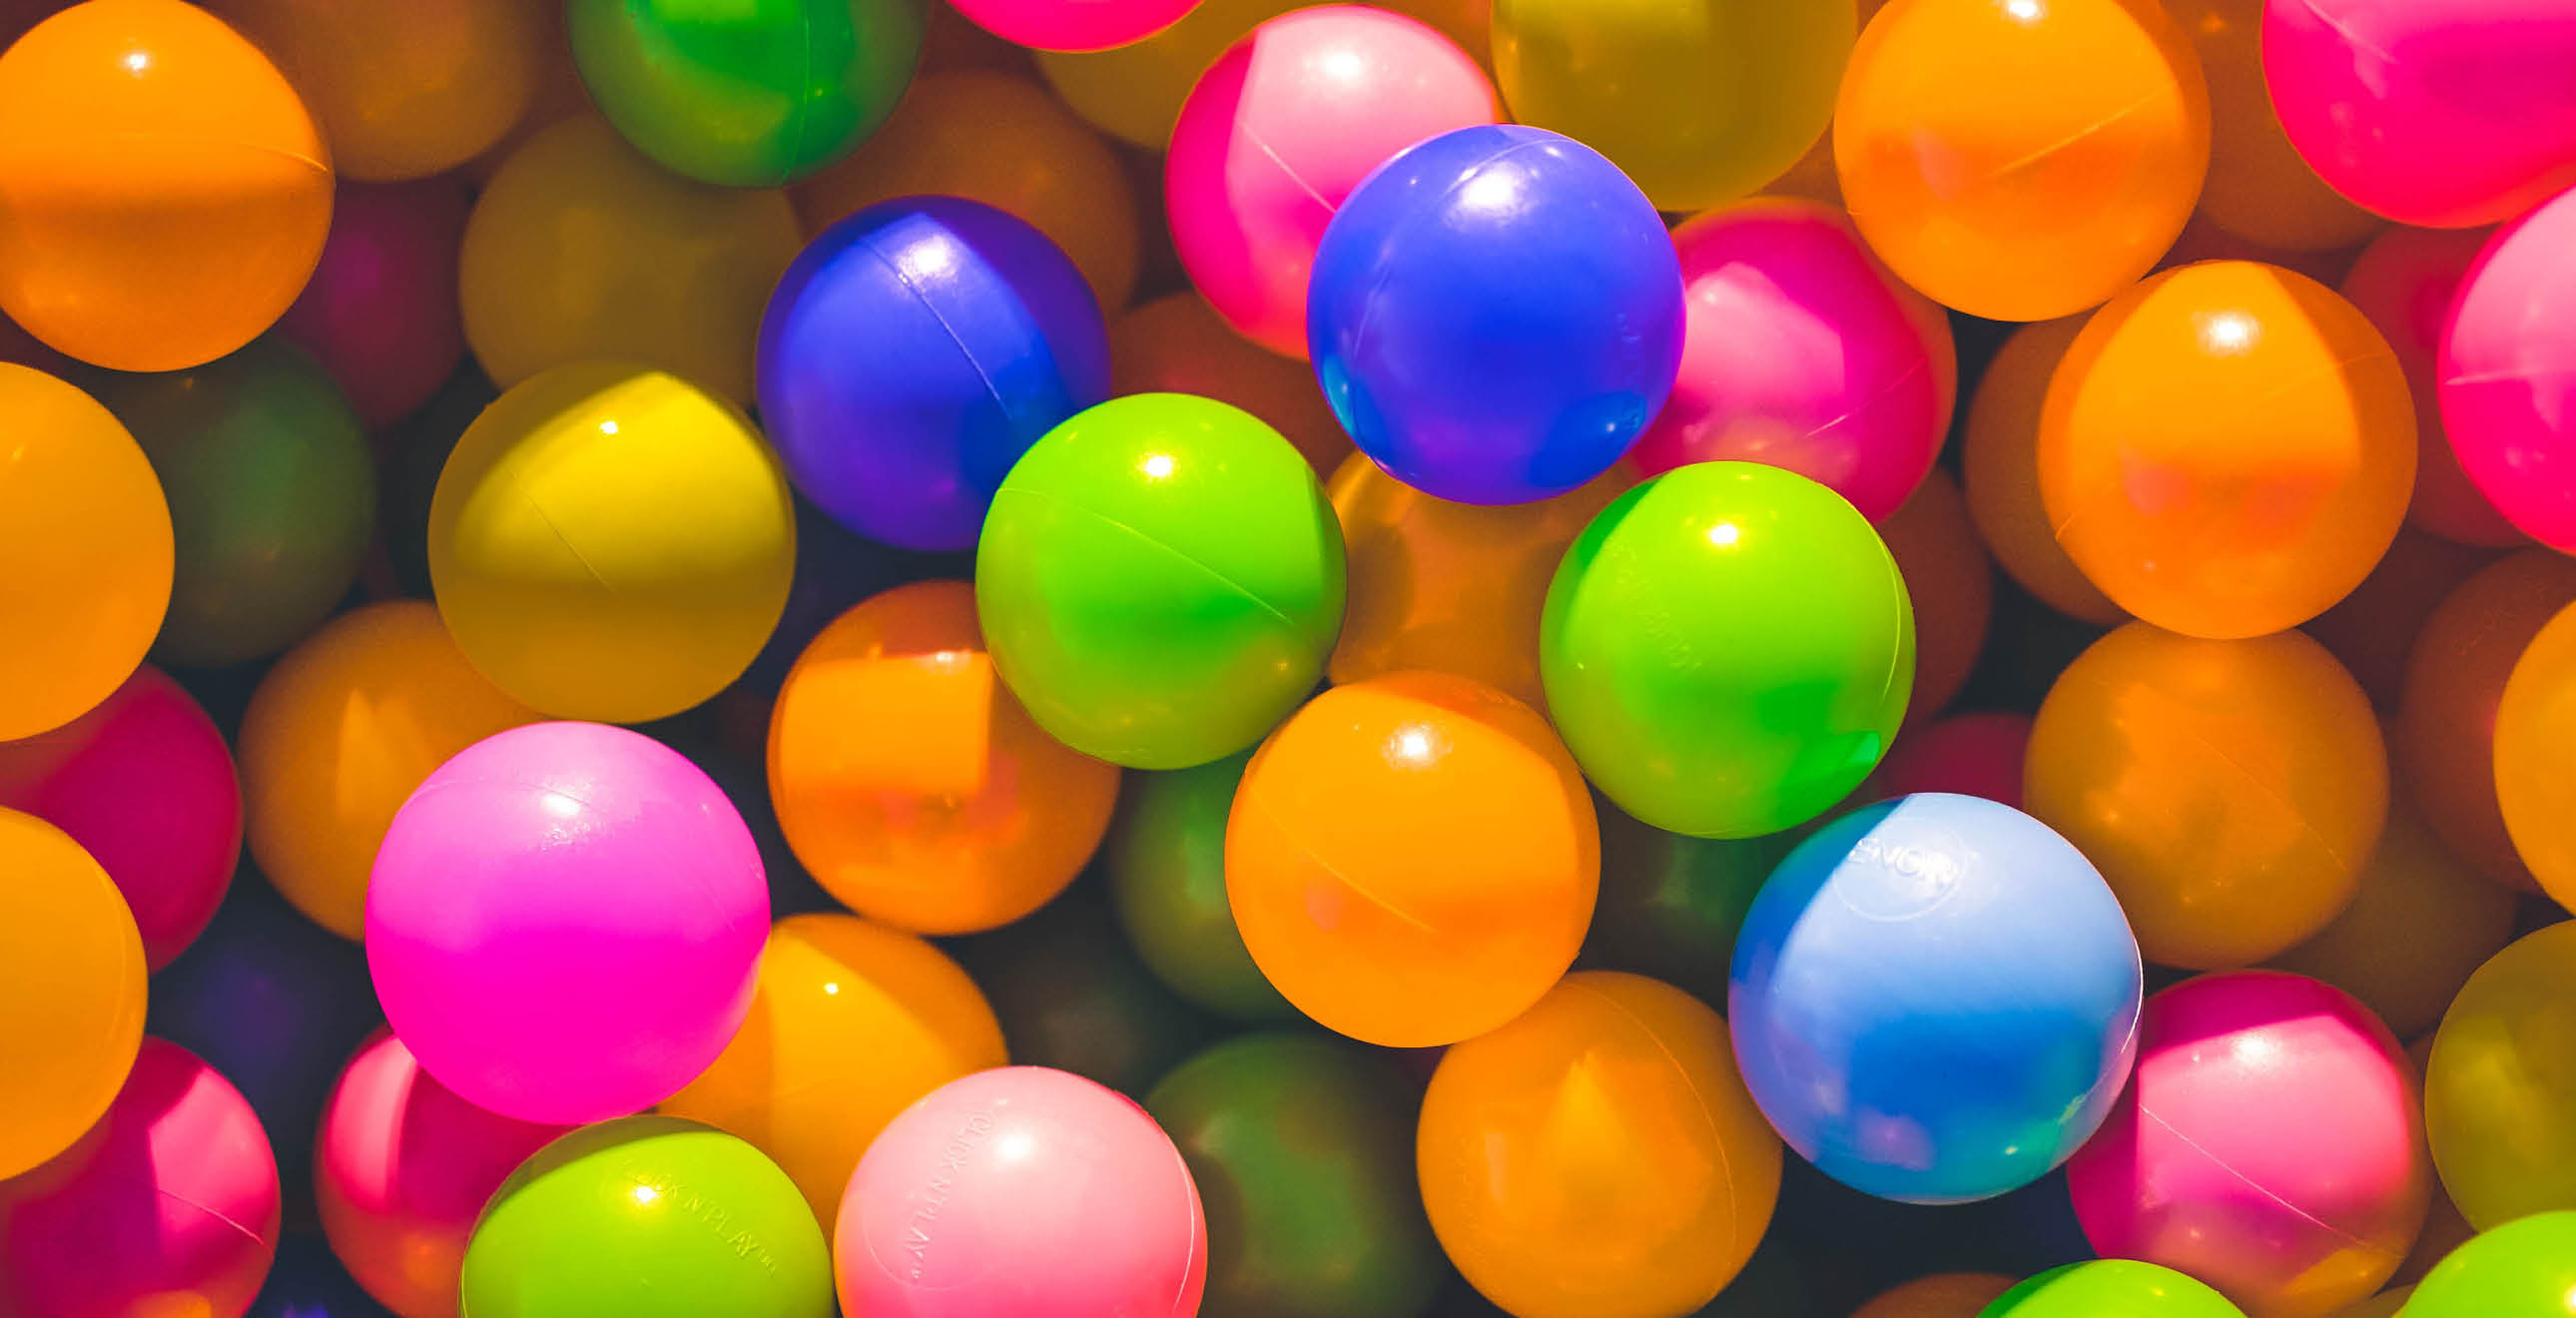 Many colourful plastic balls